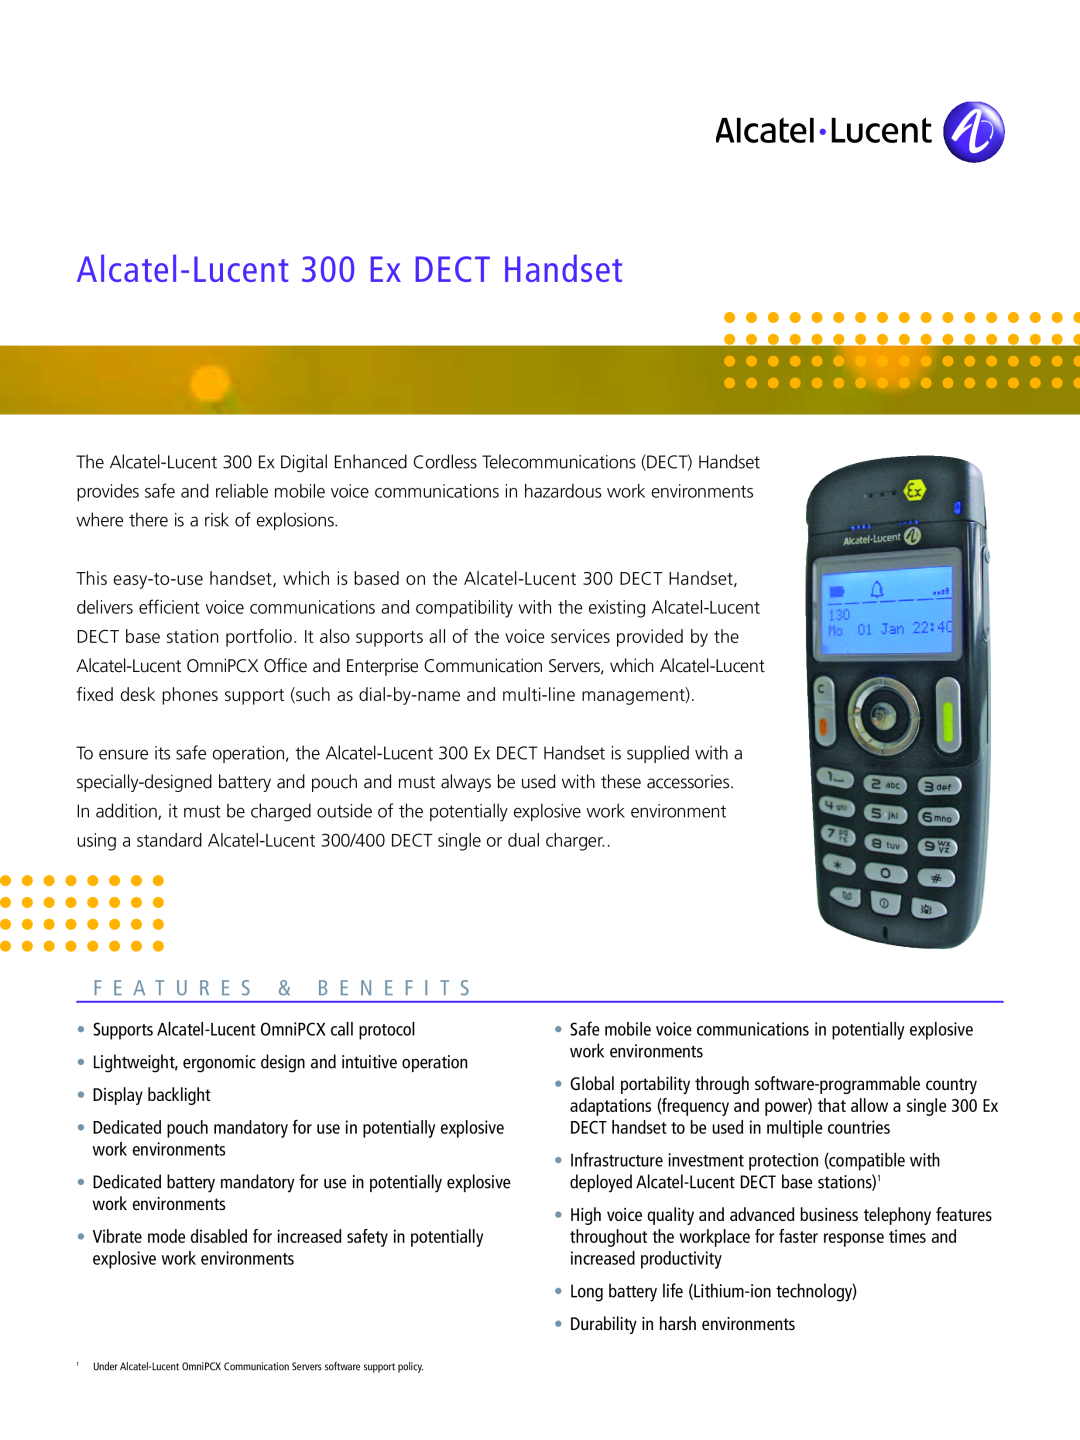 Alcatel-Lucent manual Fe Atu Re S & Ben Efi Ts, Alcat el-Lucent300 Ex DECT Handset 